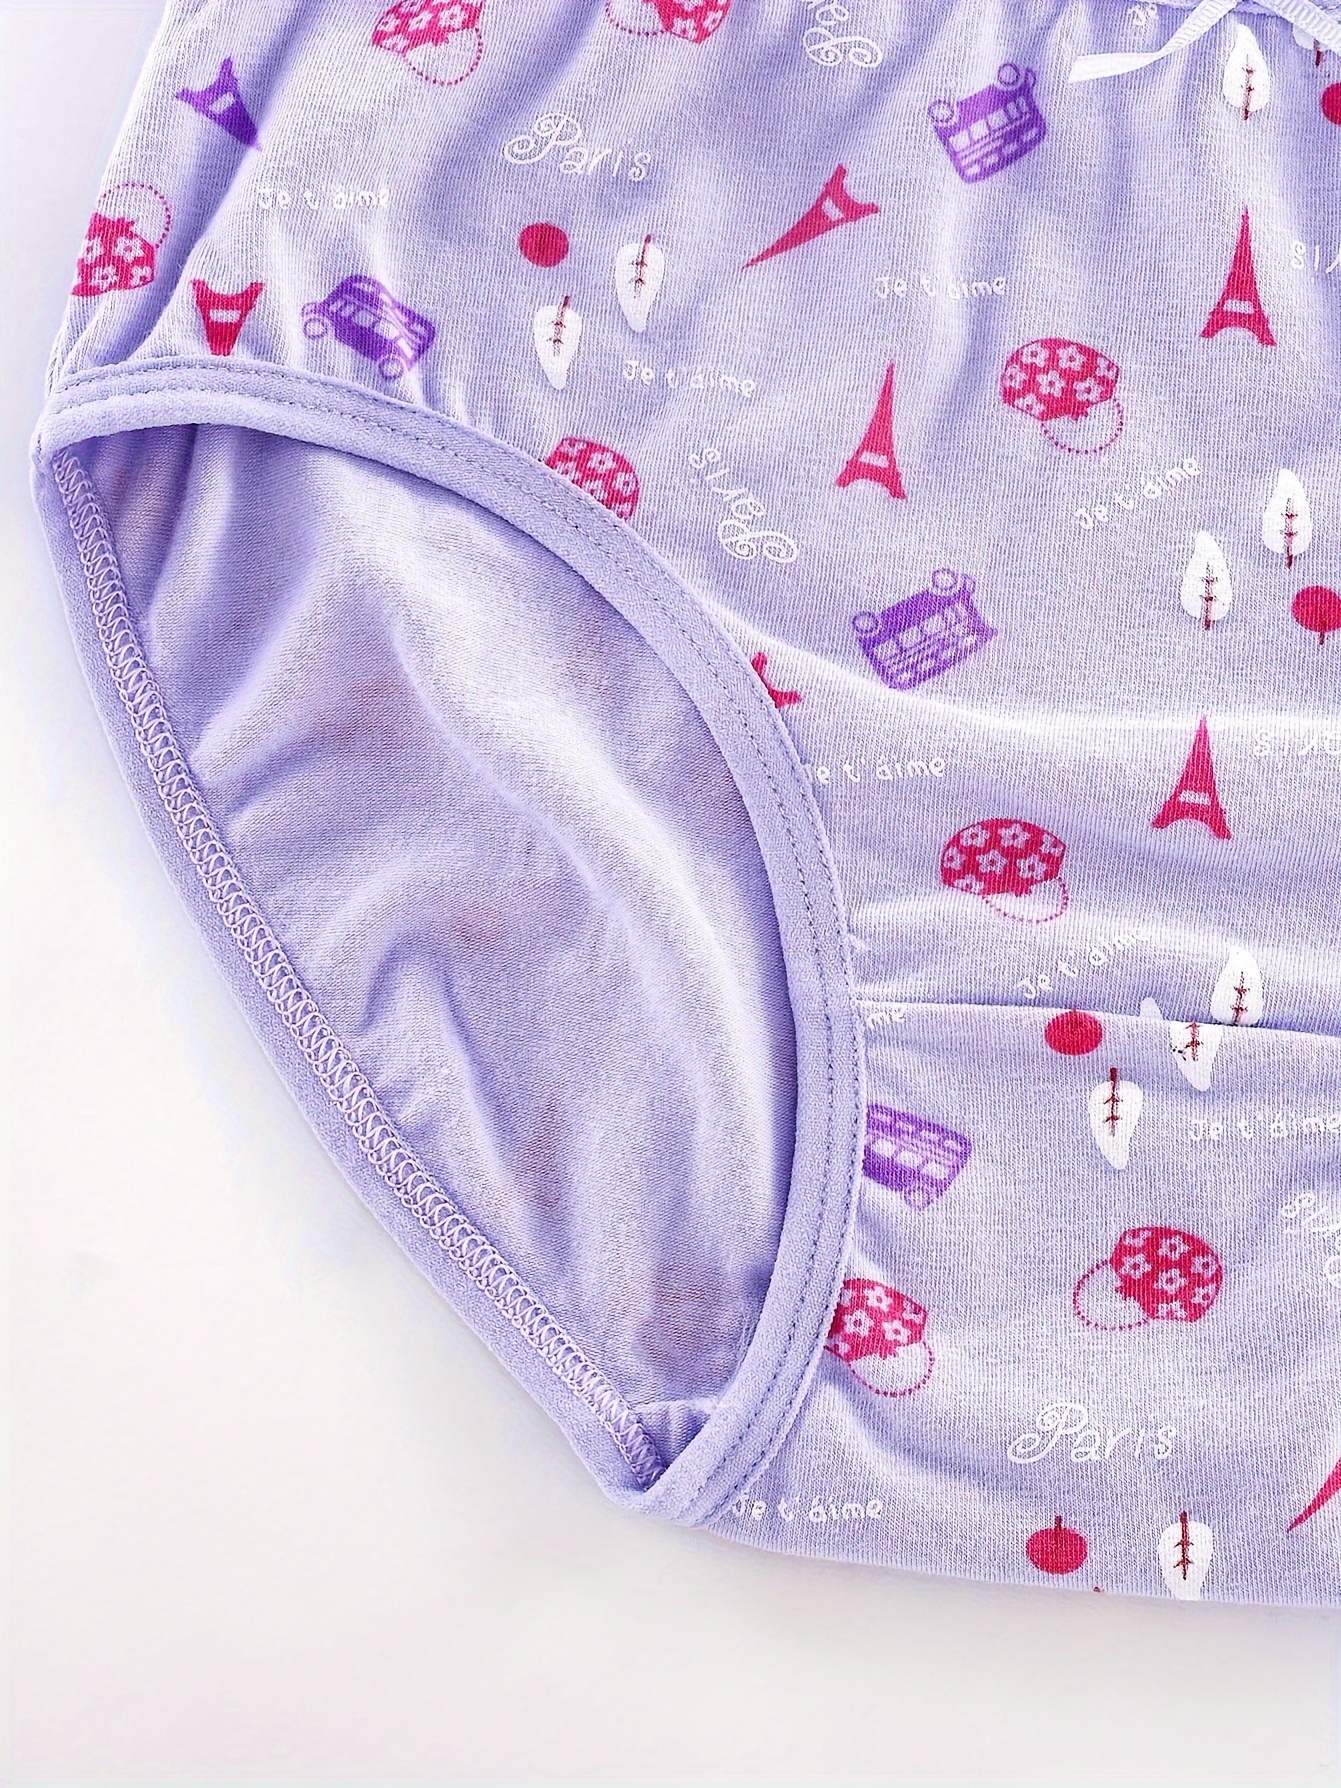 Toddler Girls Underwear 95% Cotton Soft Breathable Random - Temu Australia